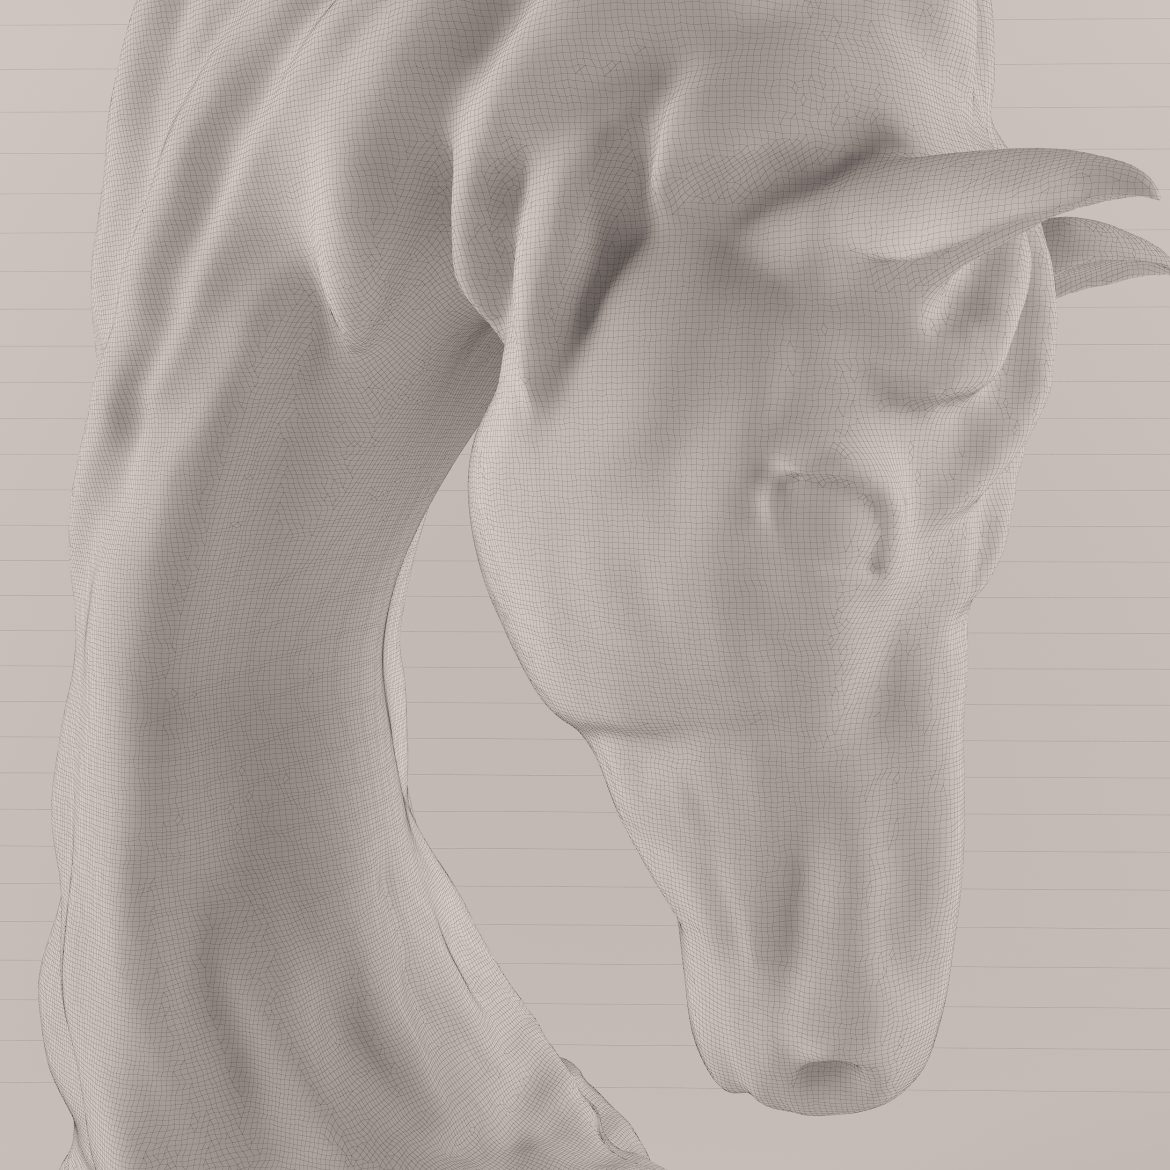 horse statue-402 3d model max obj 297501